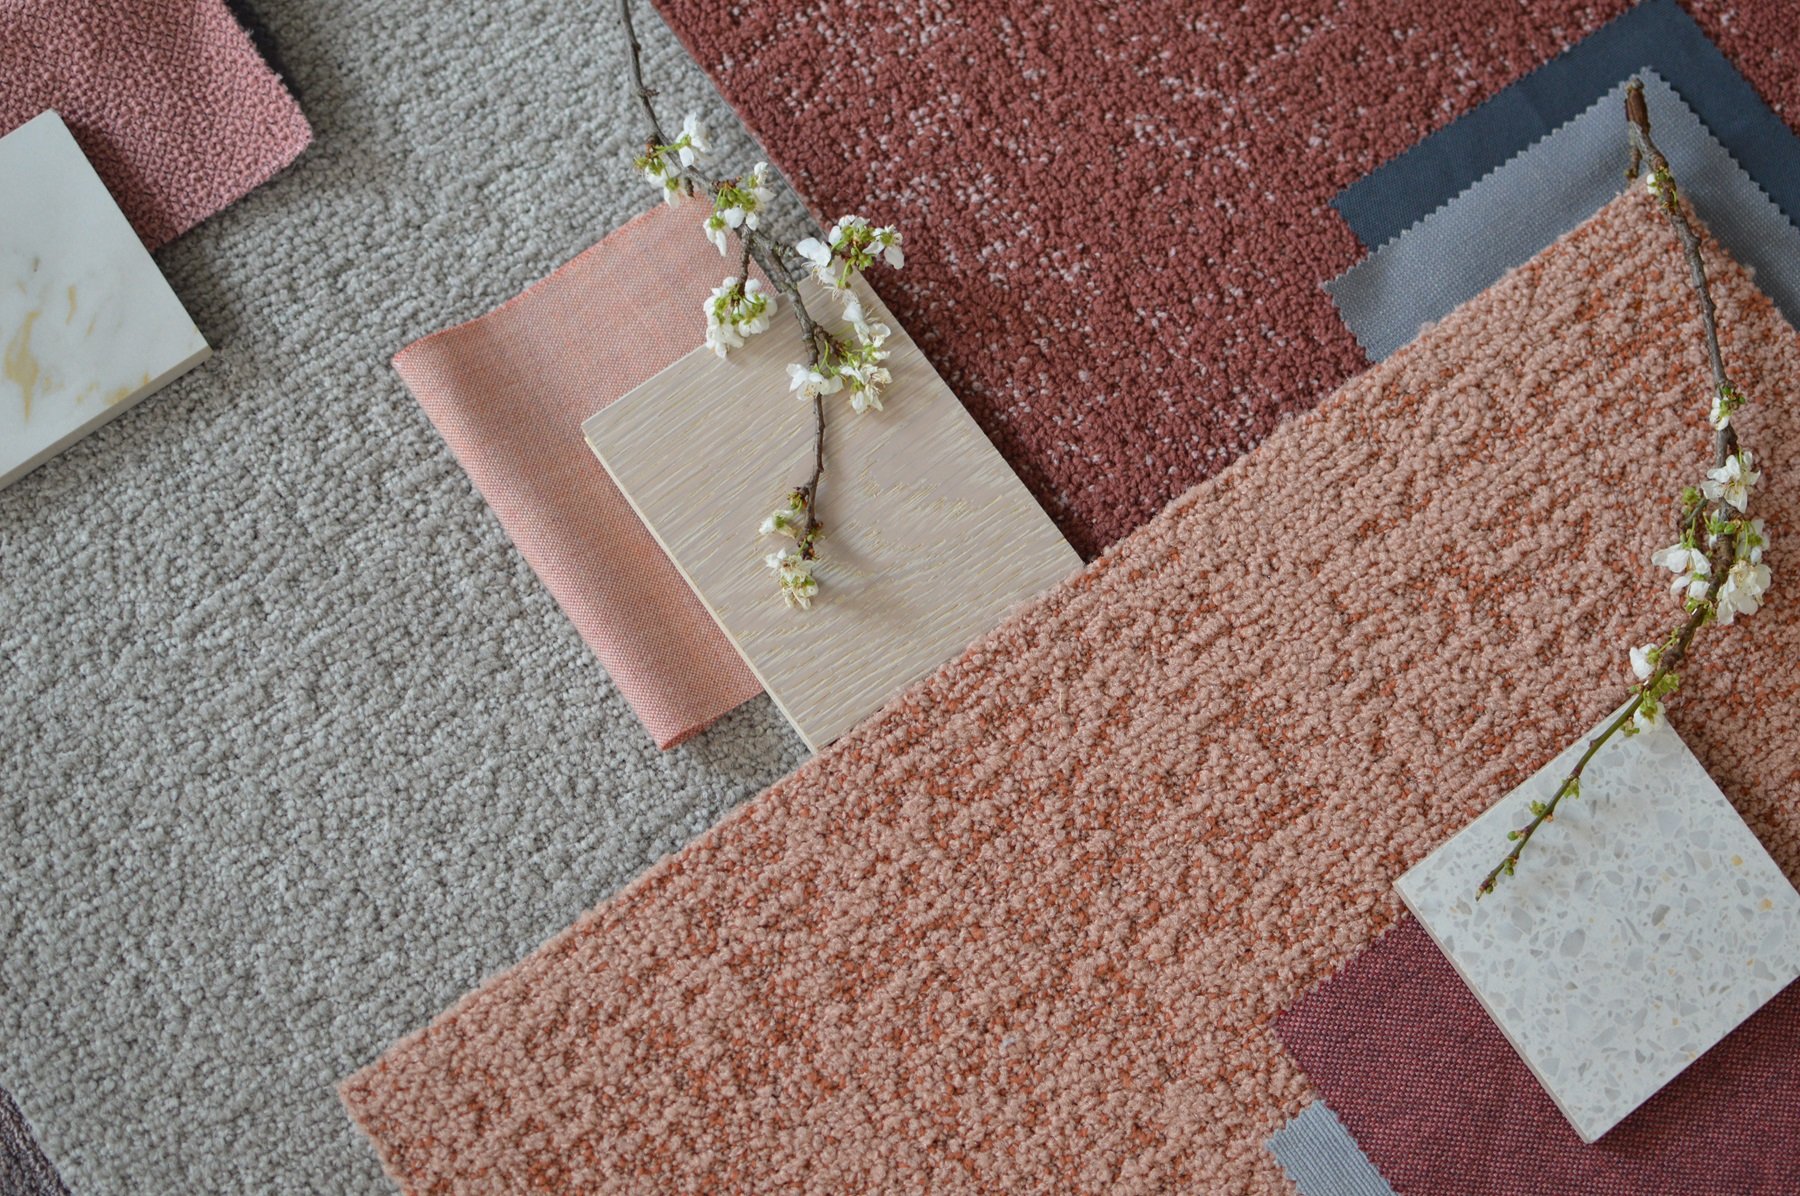 Milliken's carpet tiles in warm pinks and grey tones